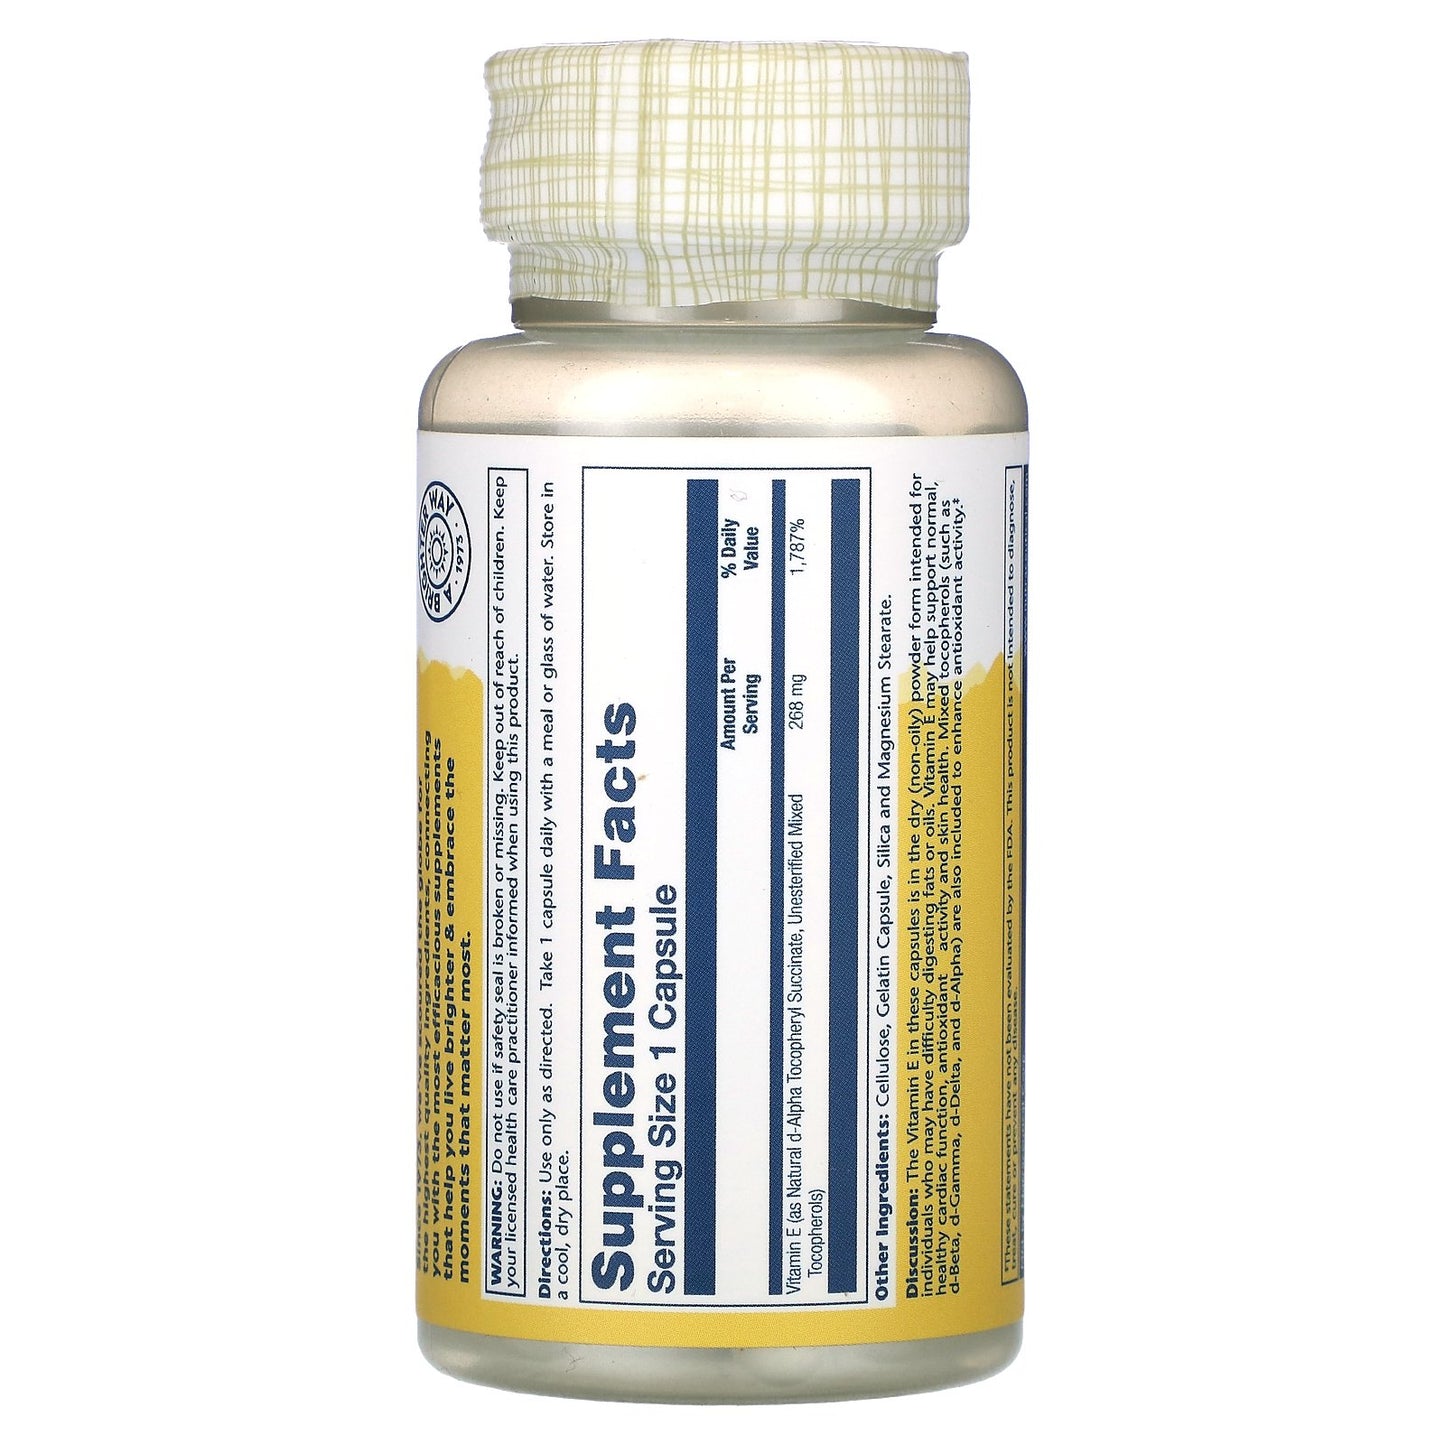 Solaray, Vitamin E, Dry Form, 268 mg, 50 Capsules